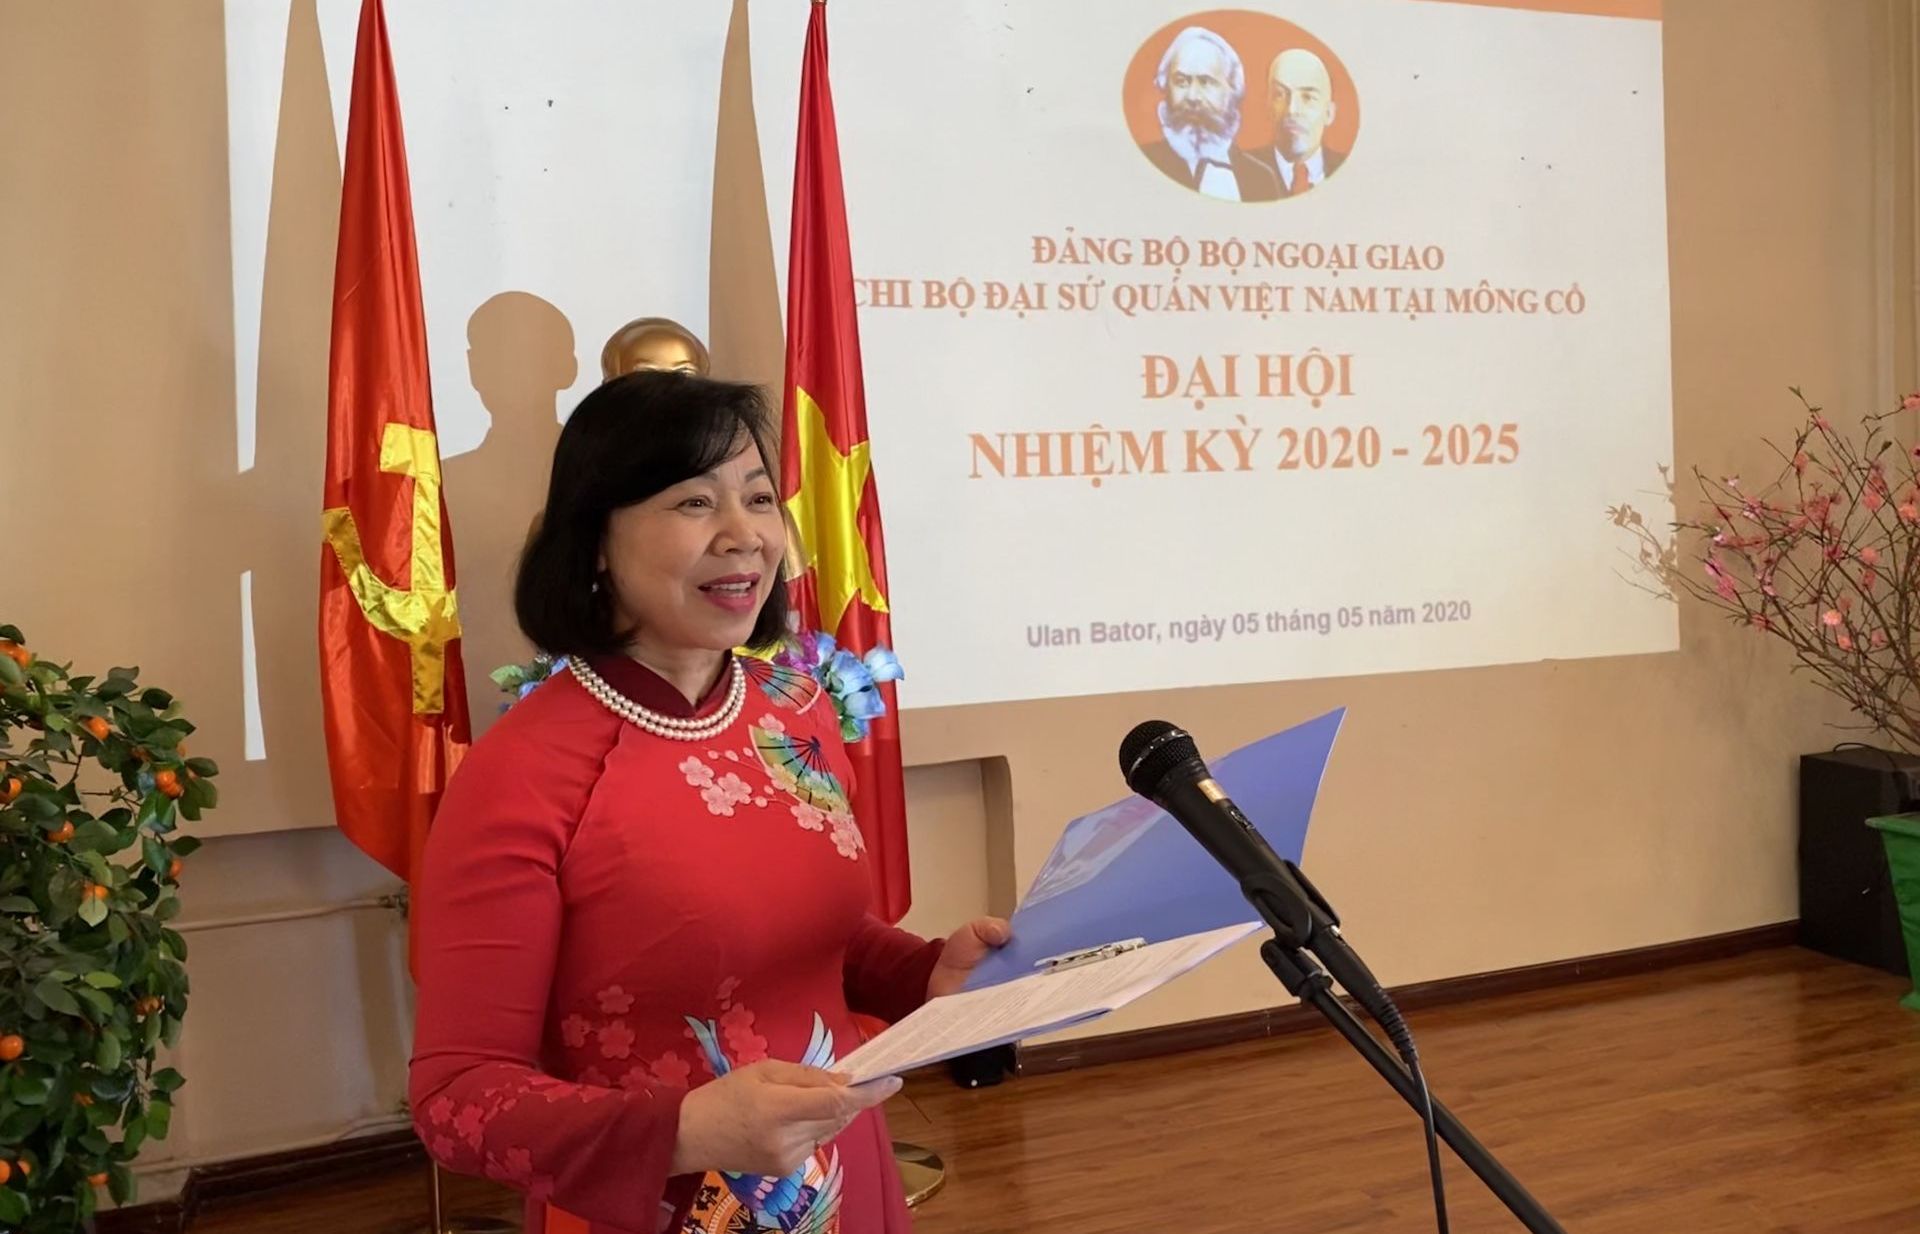 Đại sứ quán Việt Nam tại Mông Cổ tổ chức Đại hội chi bộ